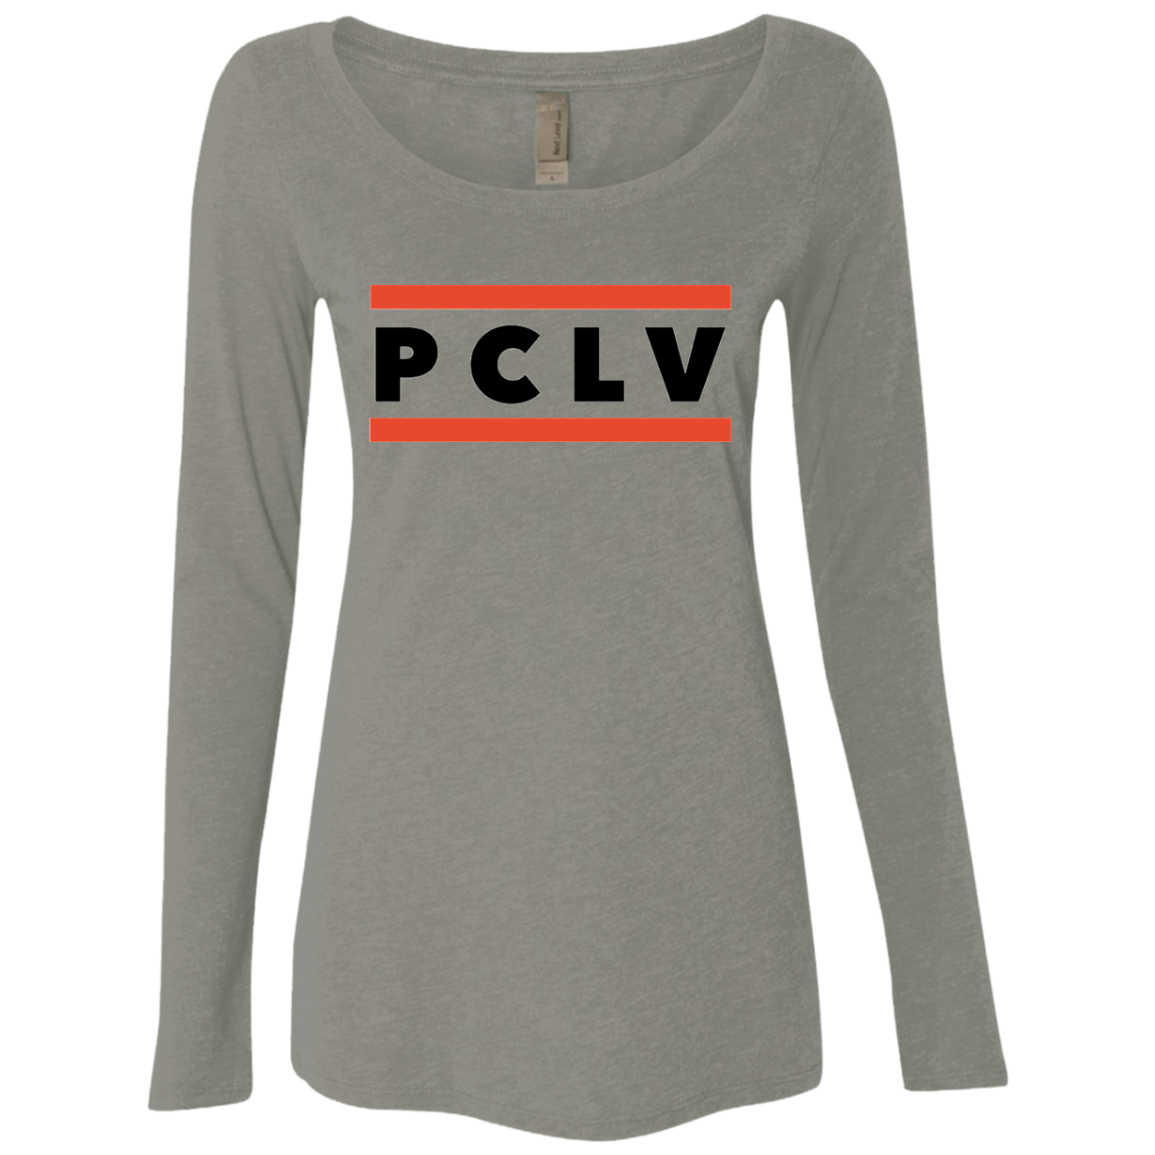 PCLV Ladies Scoop neck